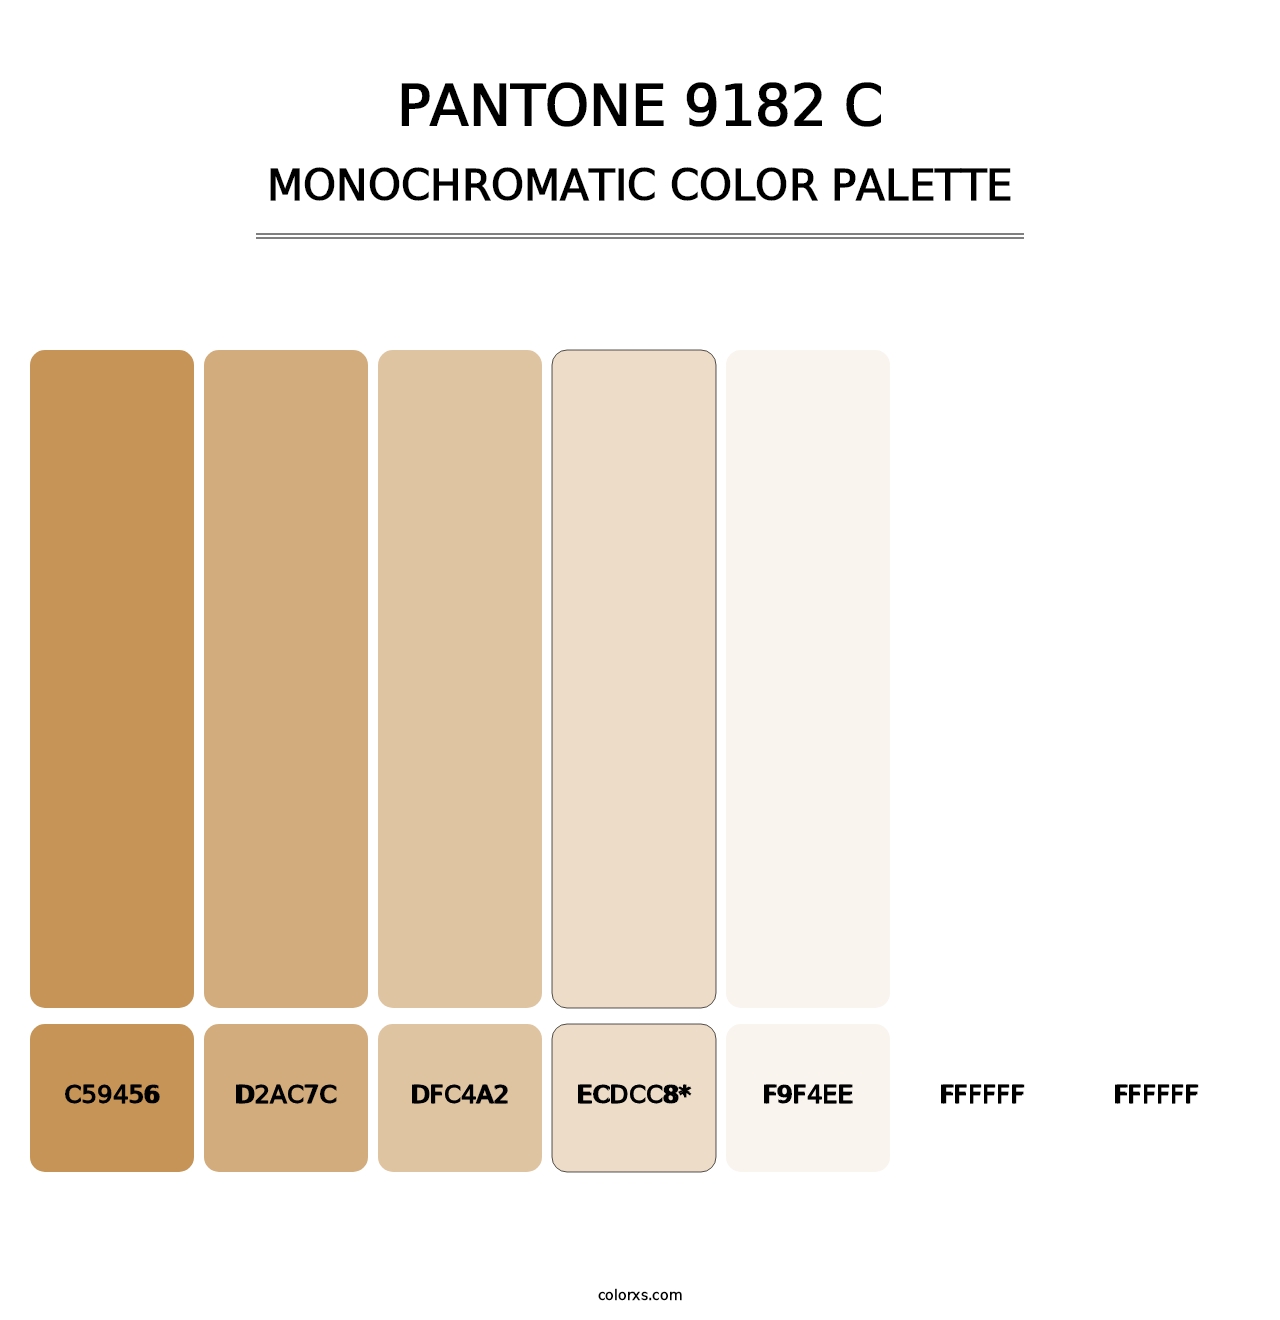 PANTONE 9182 C - Monochromatic Color Palette